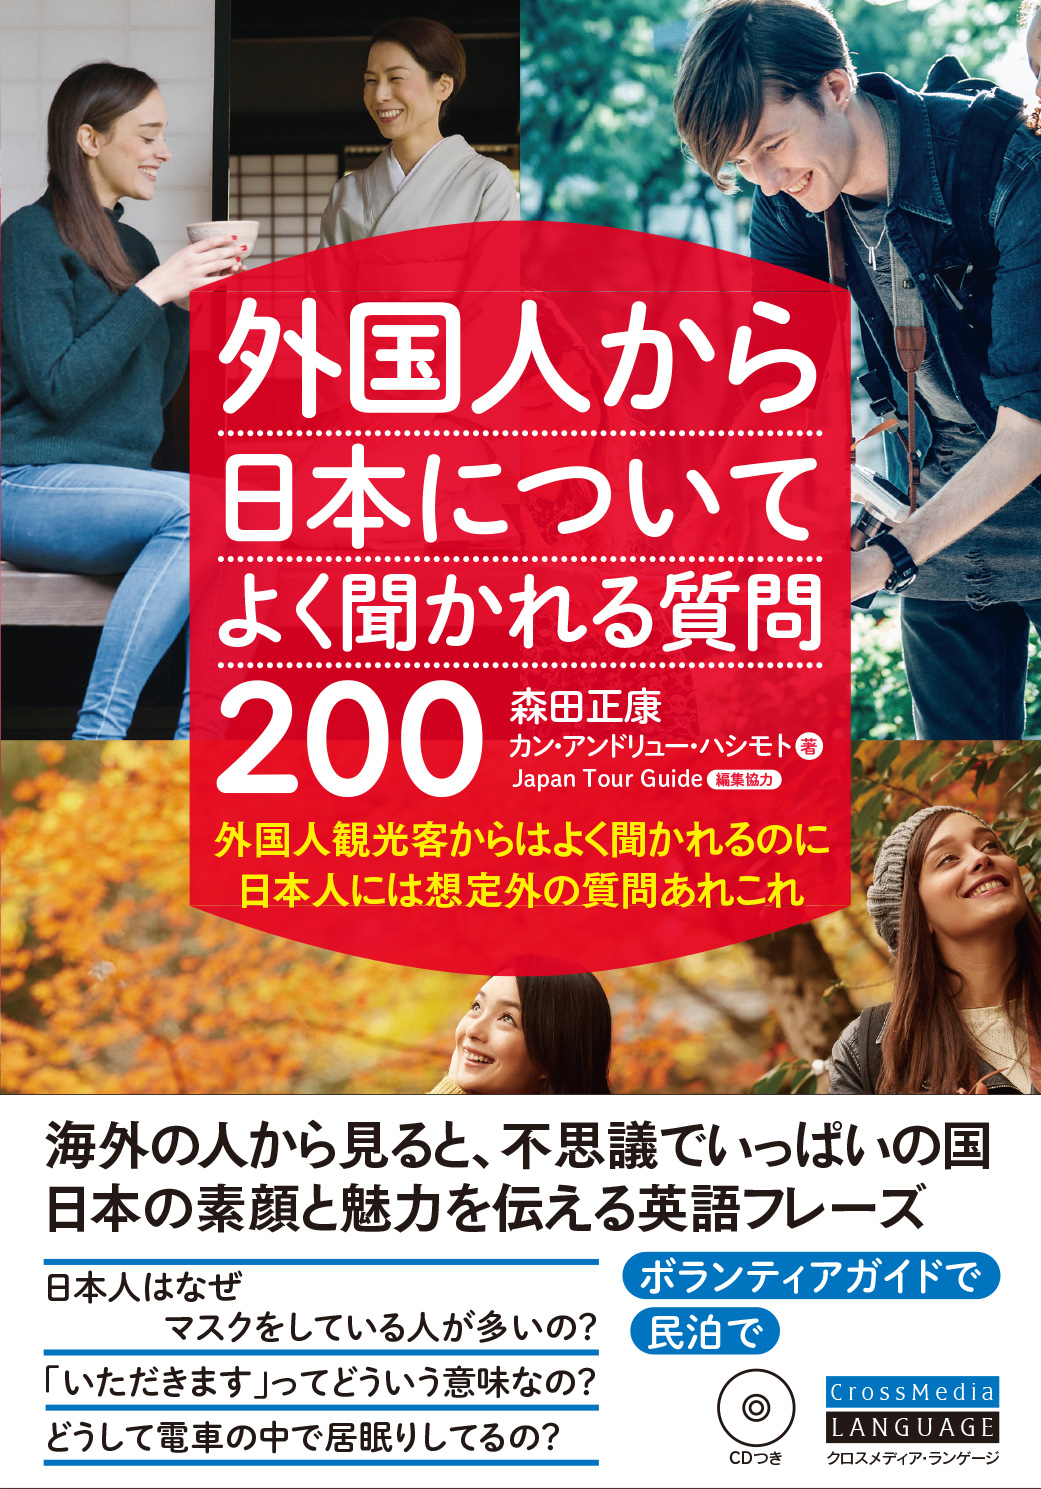 外国人から日本についてよく聞かれる質問0 Crossmedia Language Inc